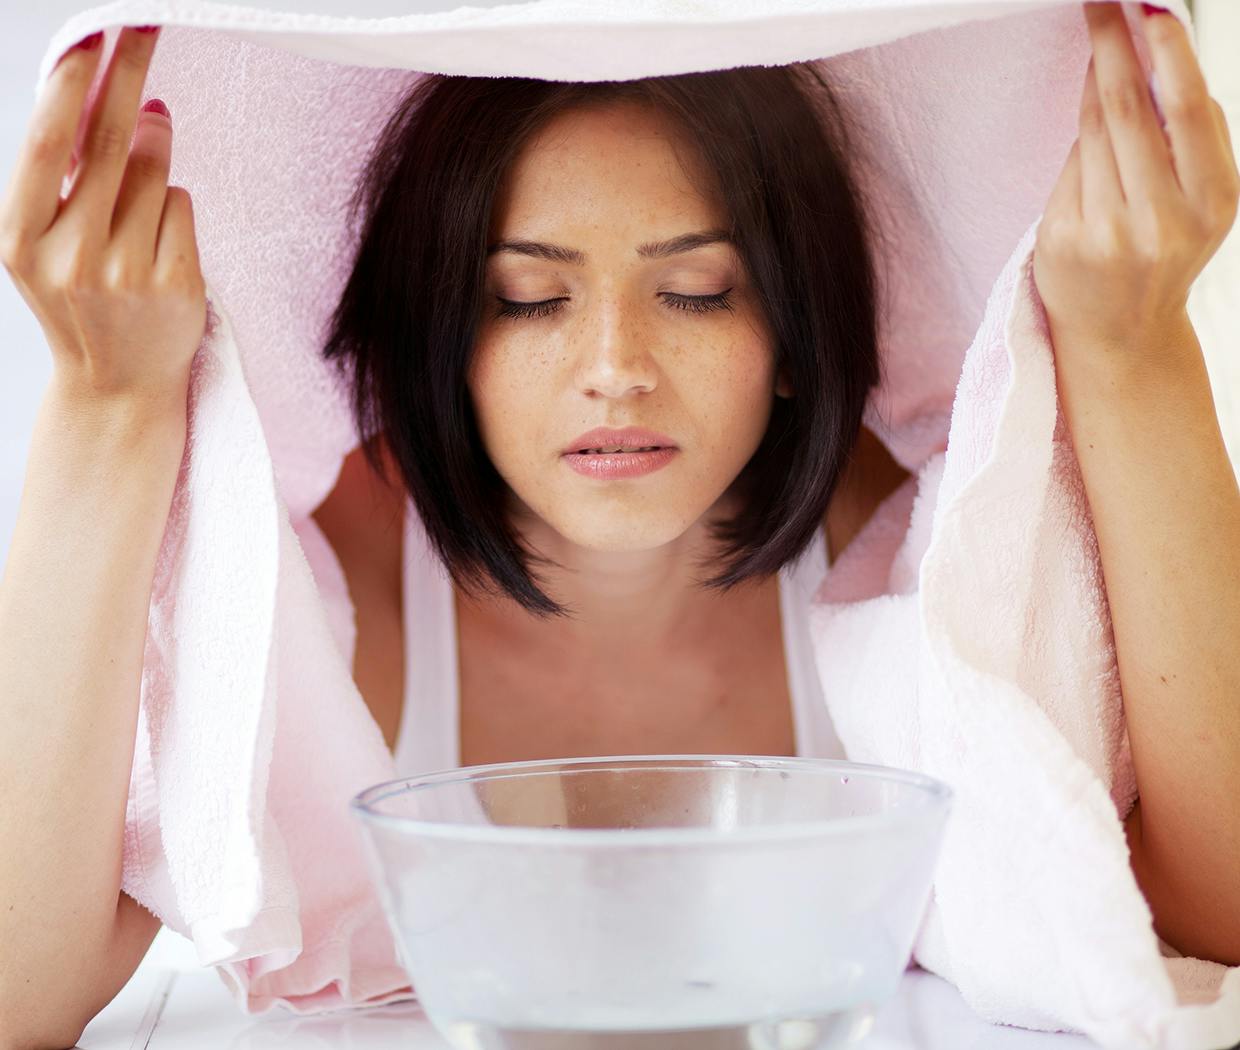 Kvinde tager dampbad mod forkølelse